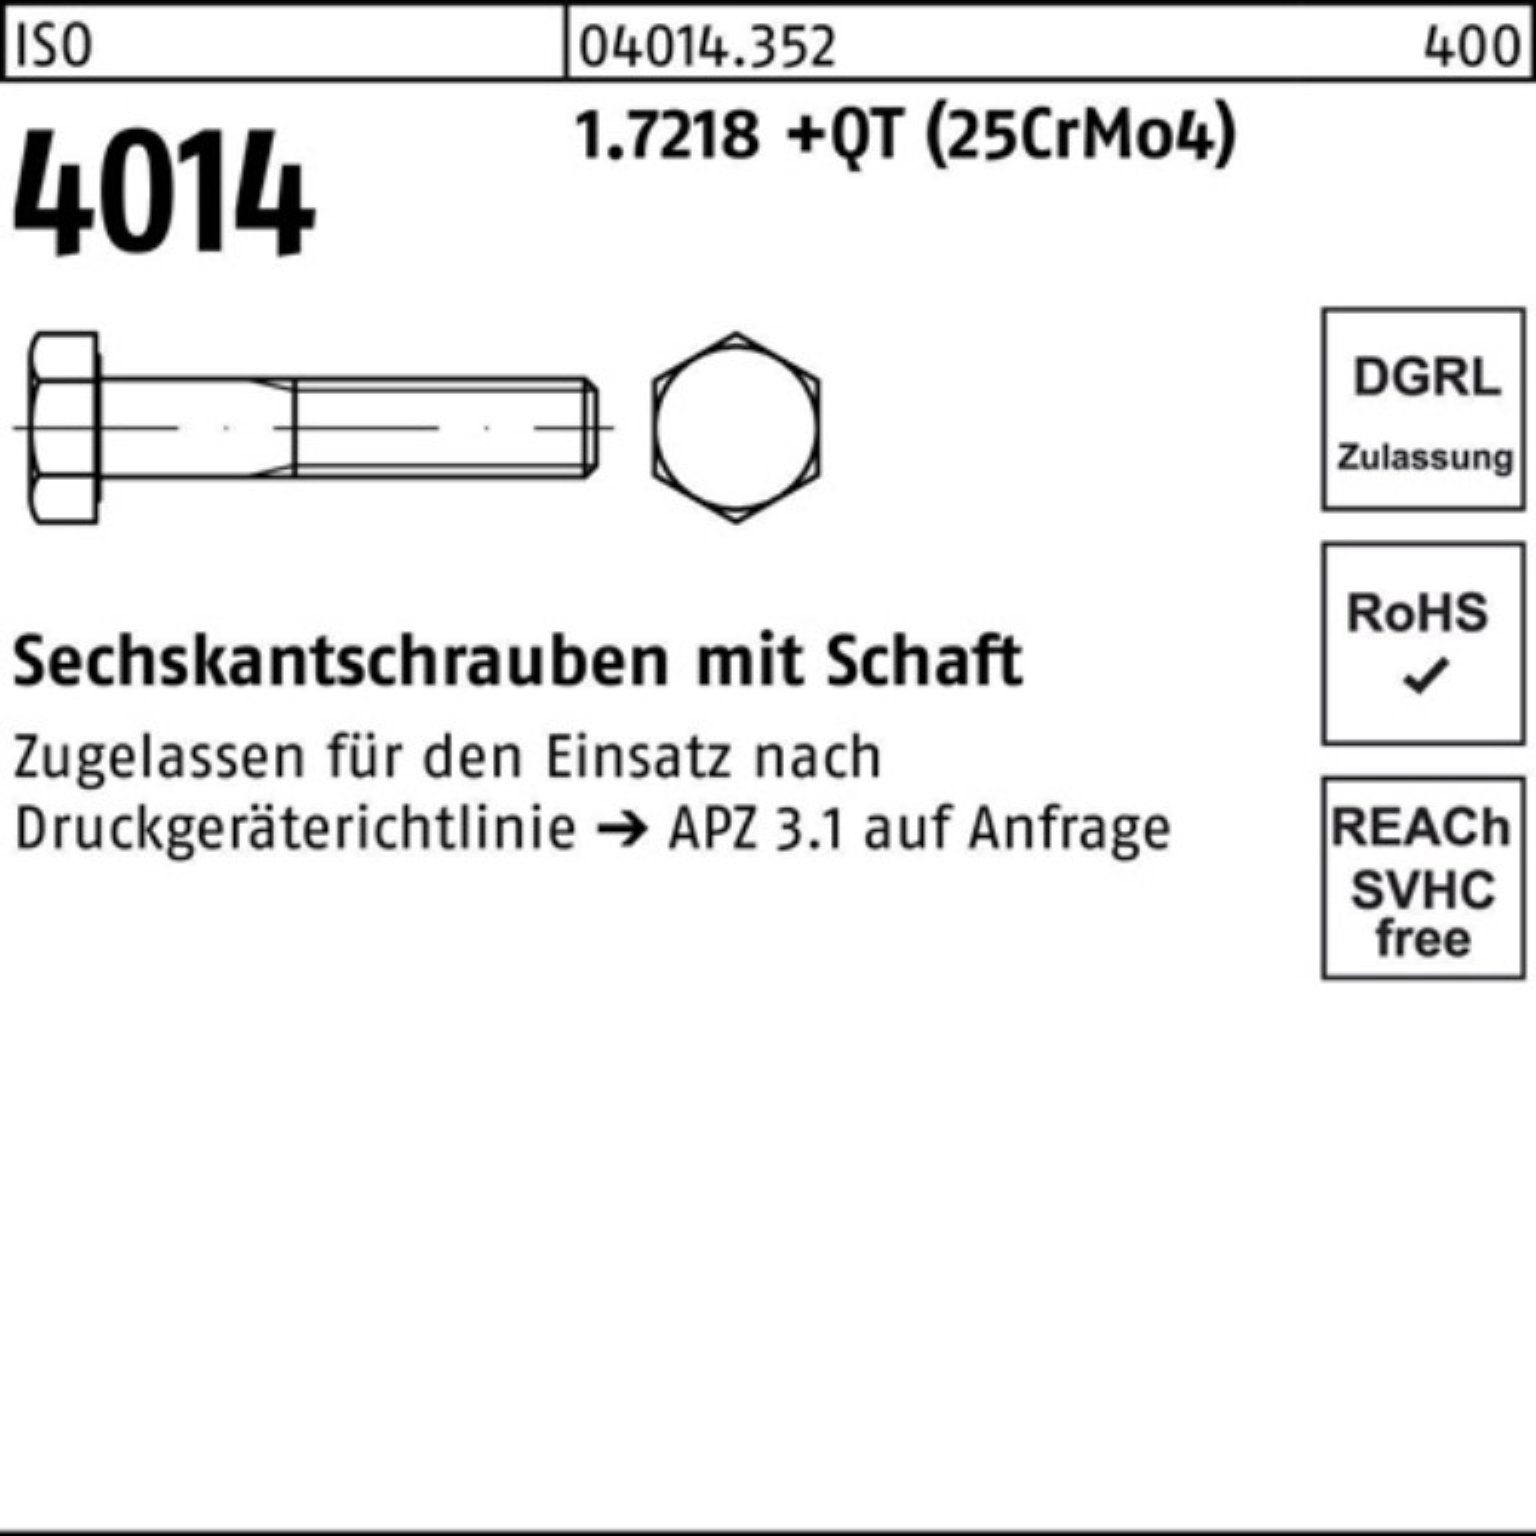 Sechskantschraube 1.7218 Schaft M12x 110 100er +QT 4014 Bufab (25Cr Sechskantschraube ISO Pack